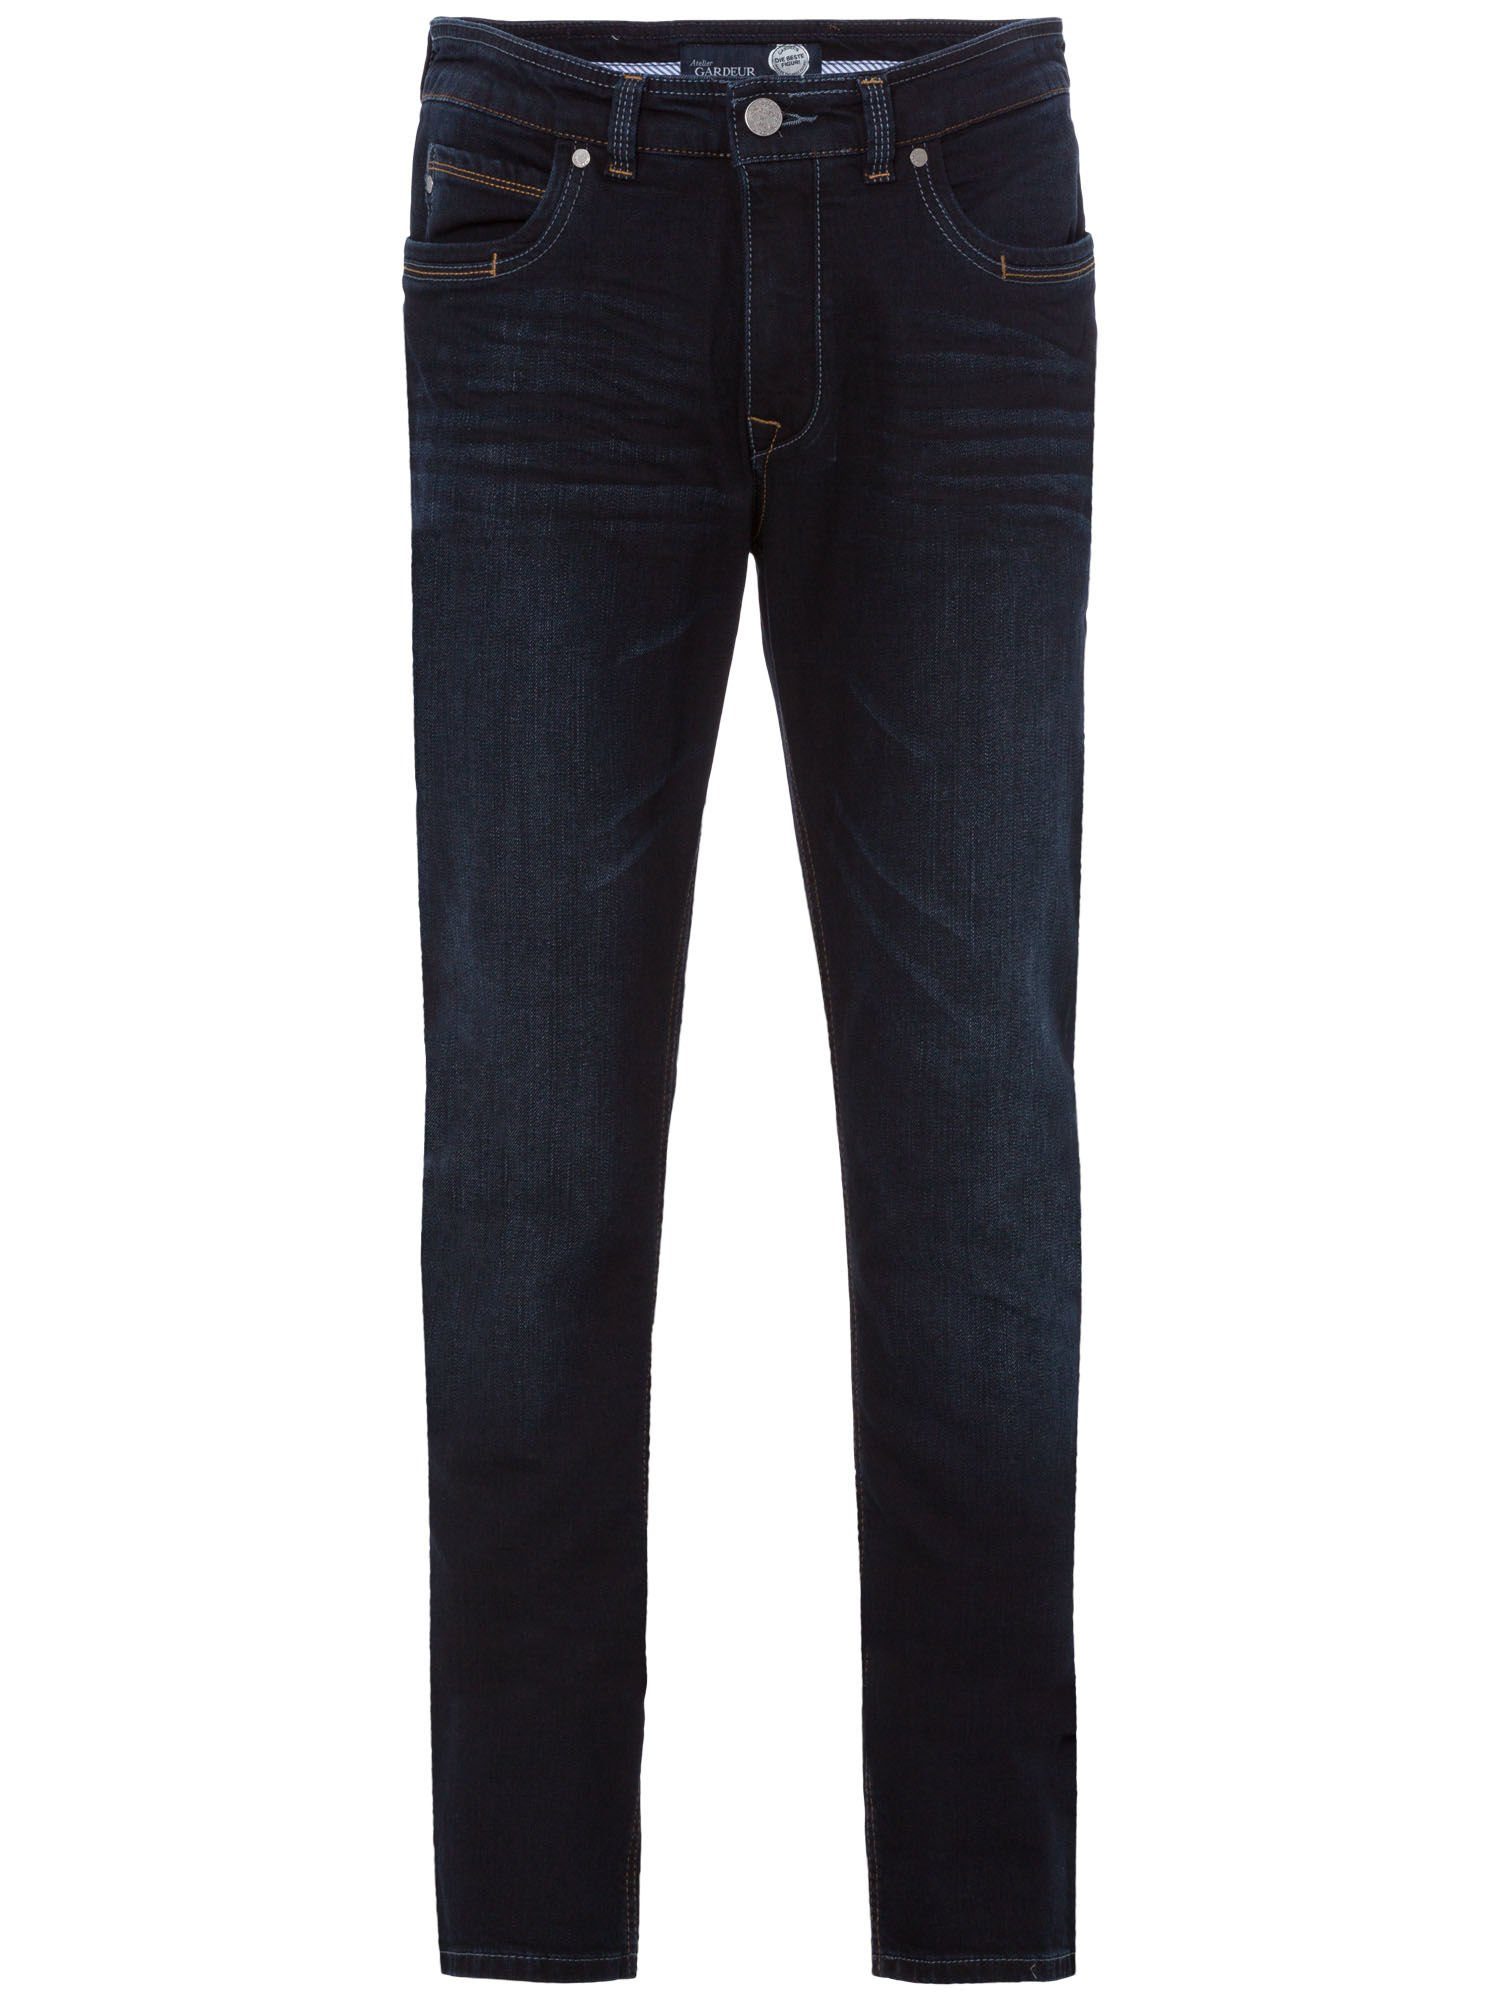 Atelier GARDEUR 5-Pocket-Jeans ATELIER GARDEUR BATU dark blue light used 0-71001-169 - SUPERFLEX rinse